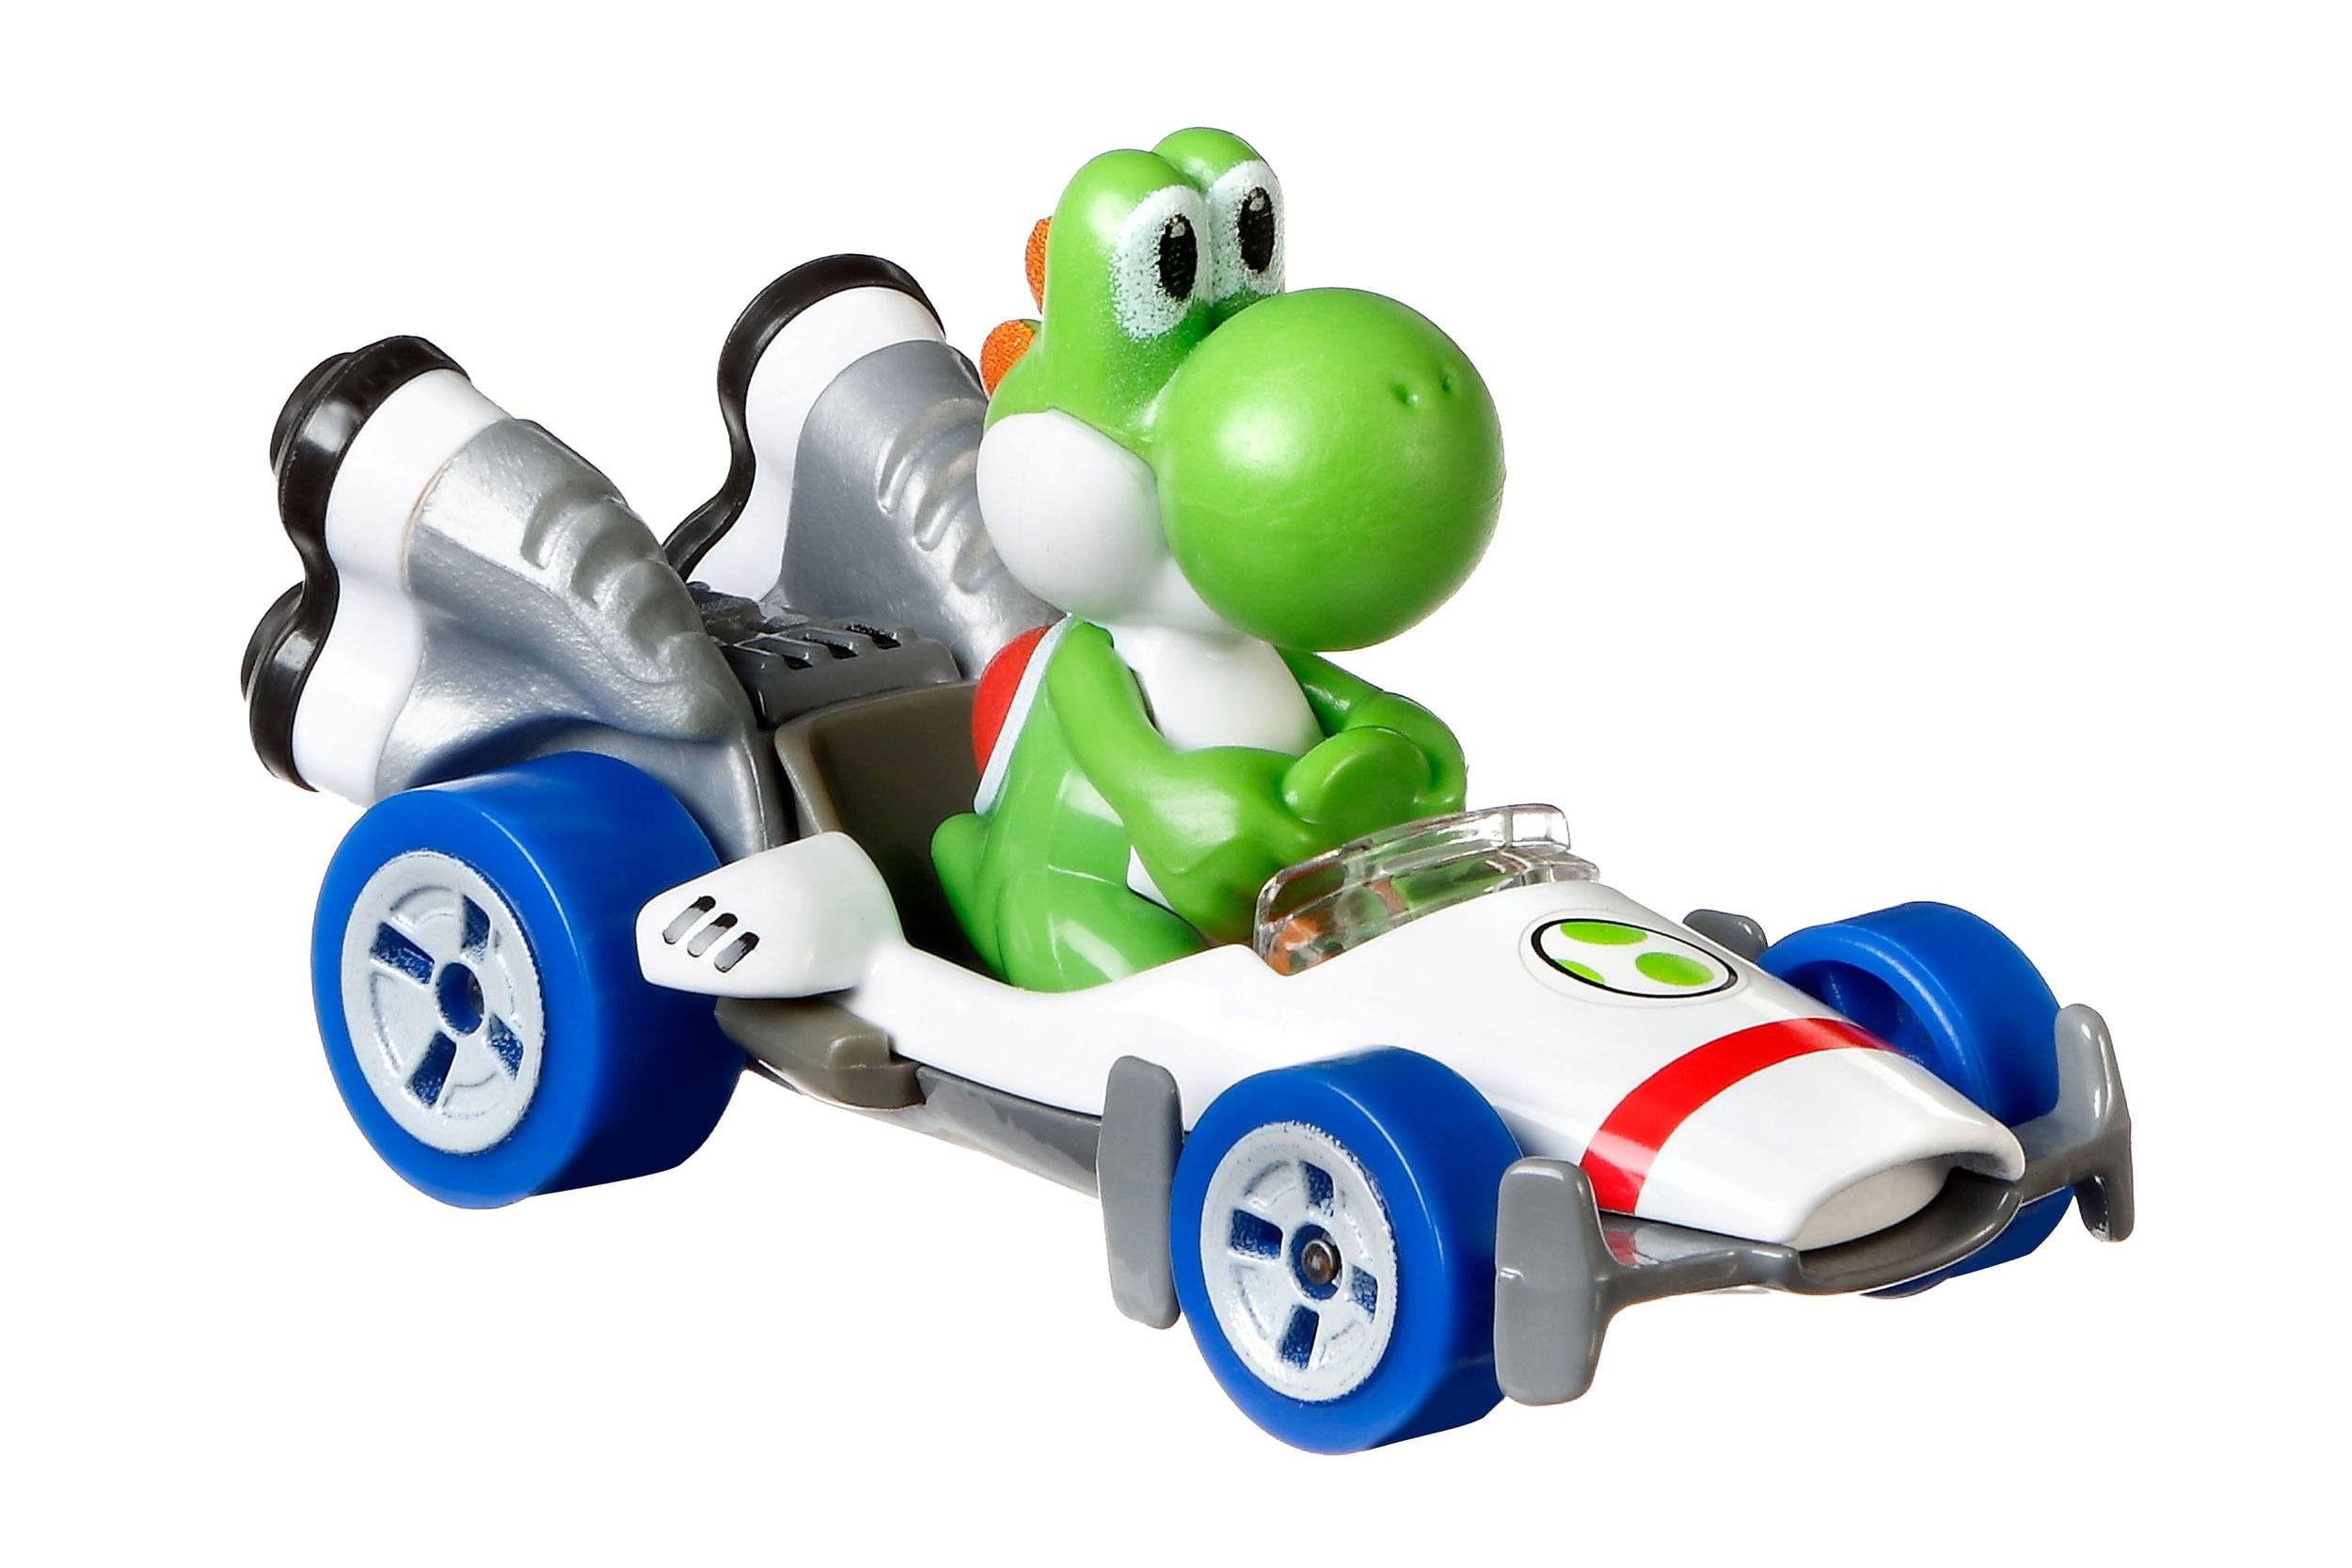 Mario Kart Hot Wheels Diecast Vehicle 1/64 Yoshi (B Dasher) 8 cm